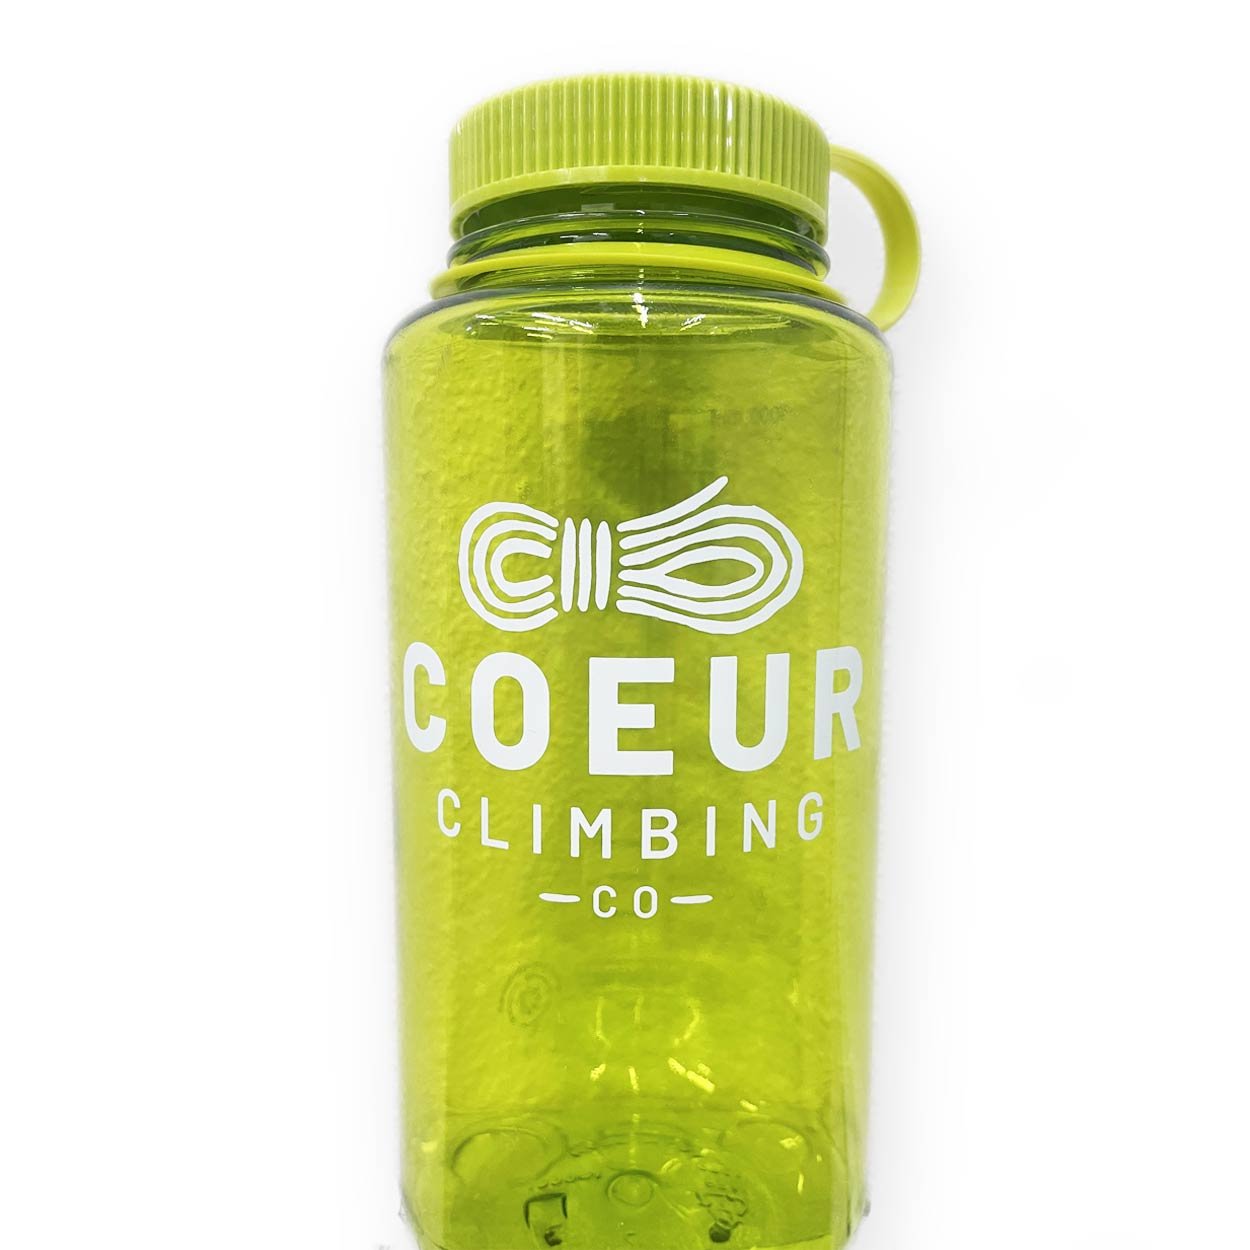 spring-green-32oz-nalgene-water-bottle-with-coeur-climbing-logo.jpg